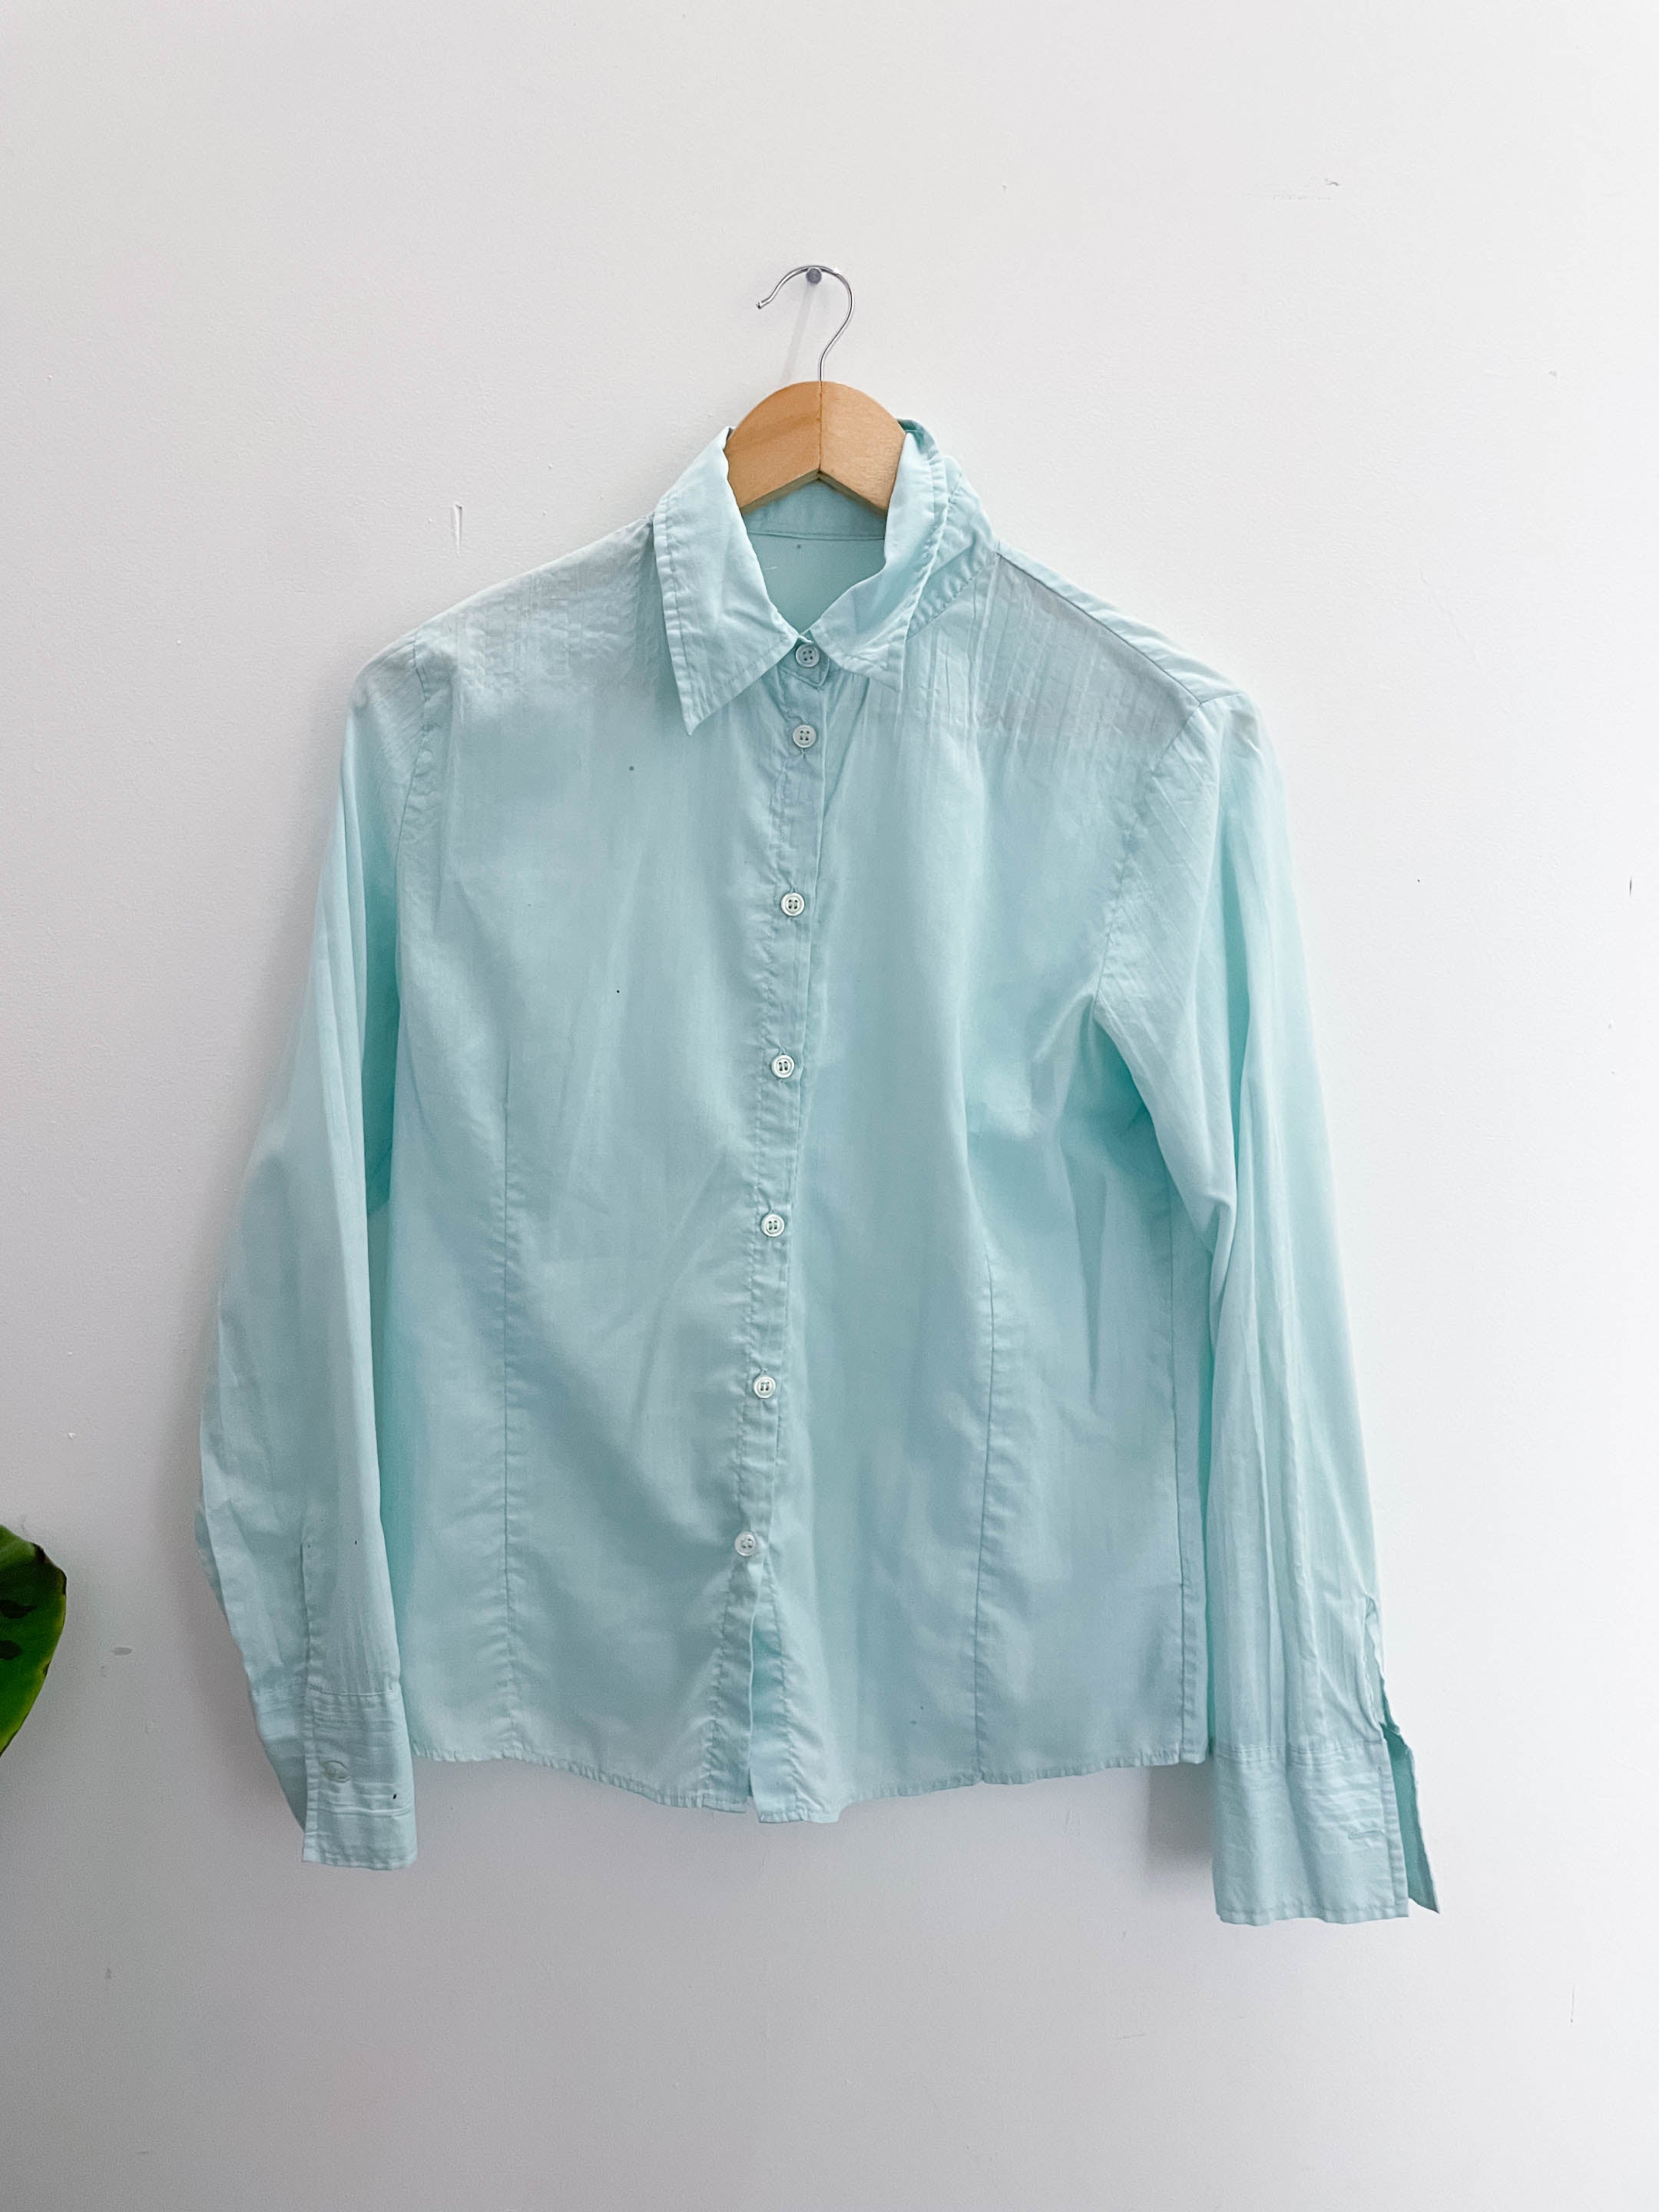 Vintage blue regular fit long sleeve shirt size 12